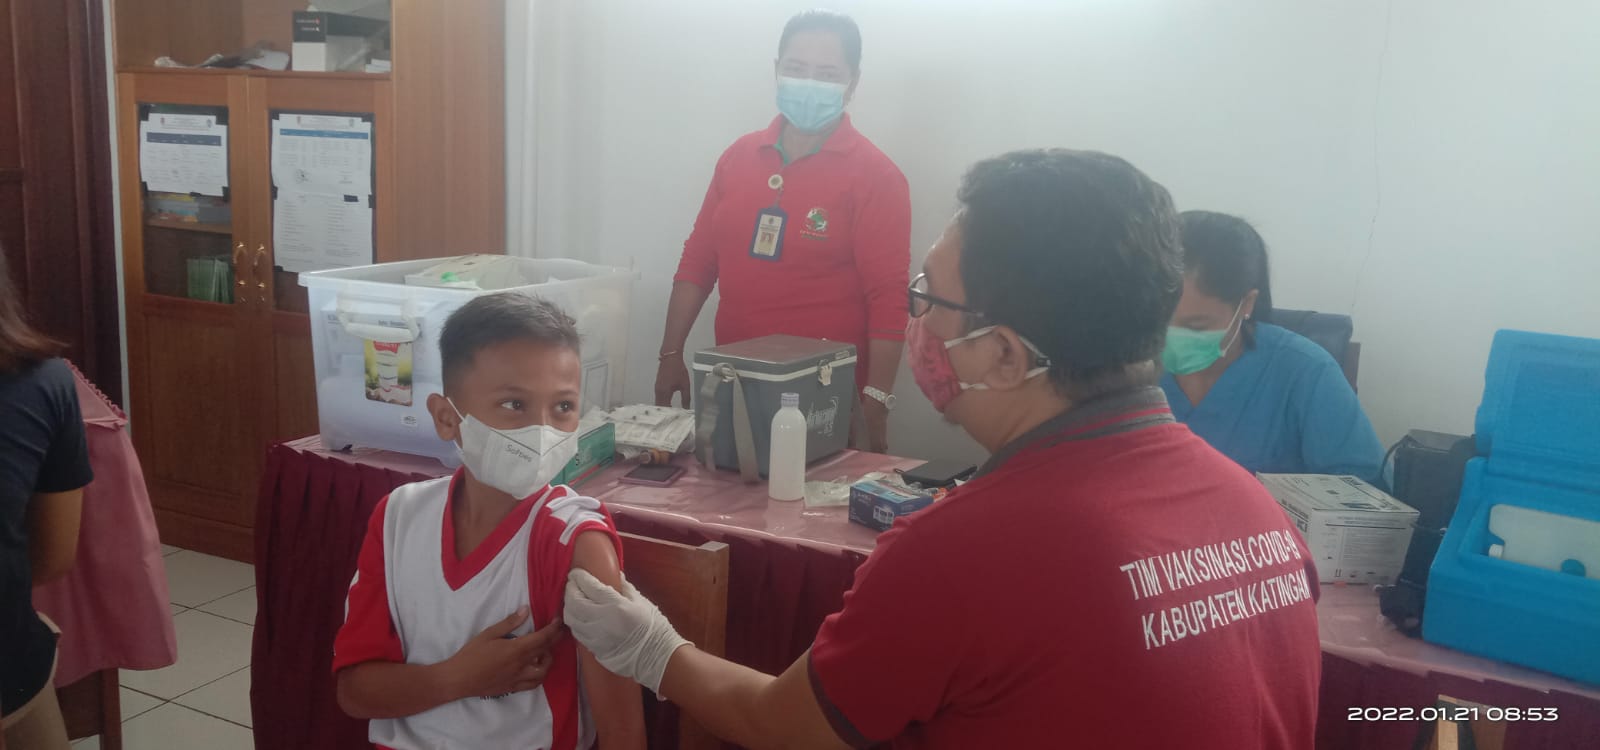 Siswa SDN 4 Kasongan Lama saat menjalani vaksinasi, Jum'at (21/1/2022)